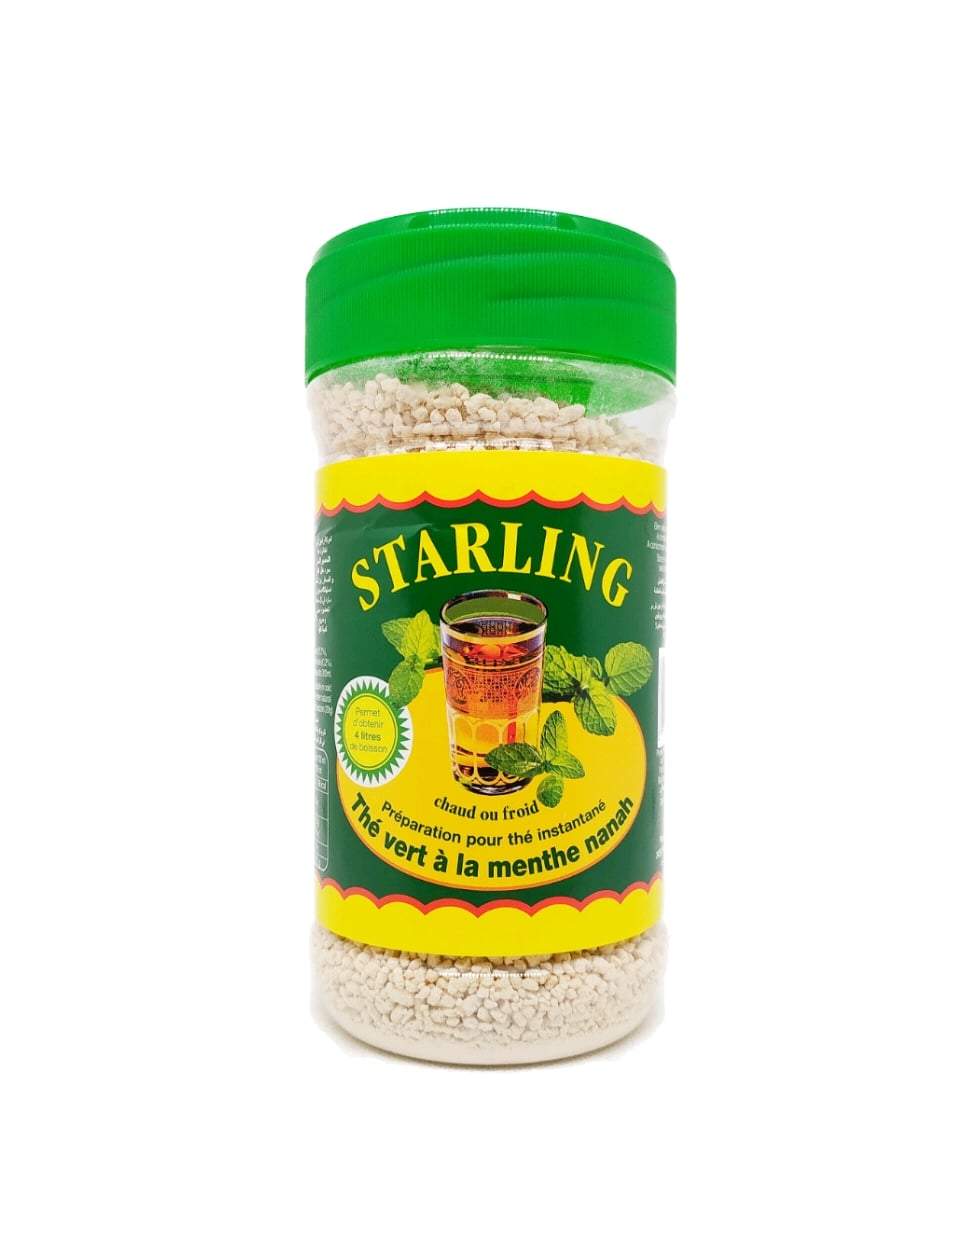 Produits orientaux en ligne: Starling - Thé vert à la menthe